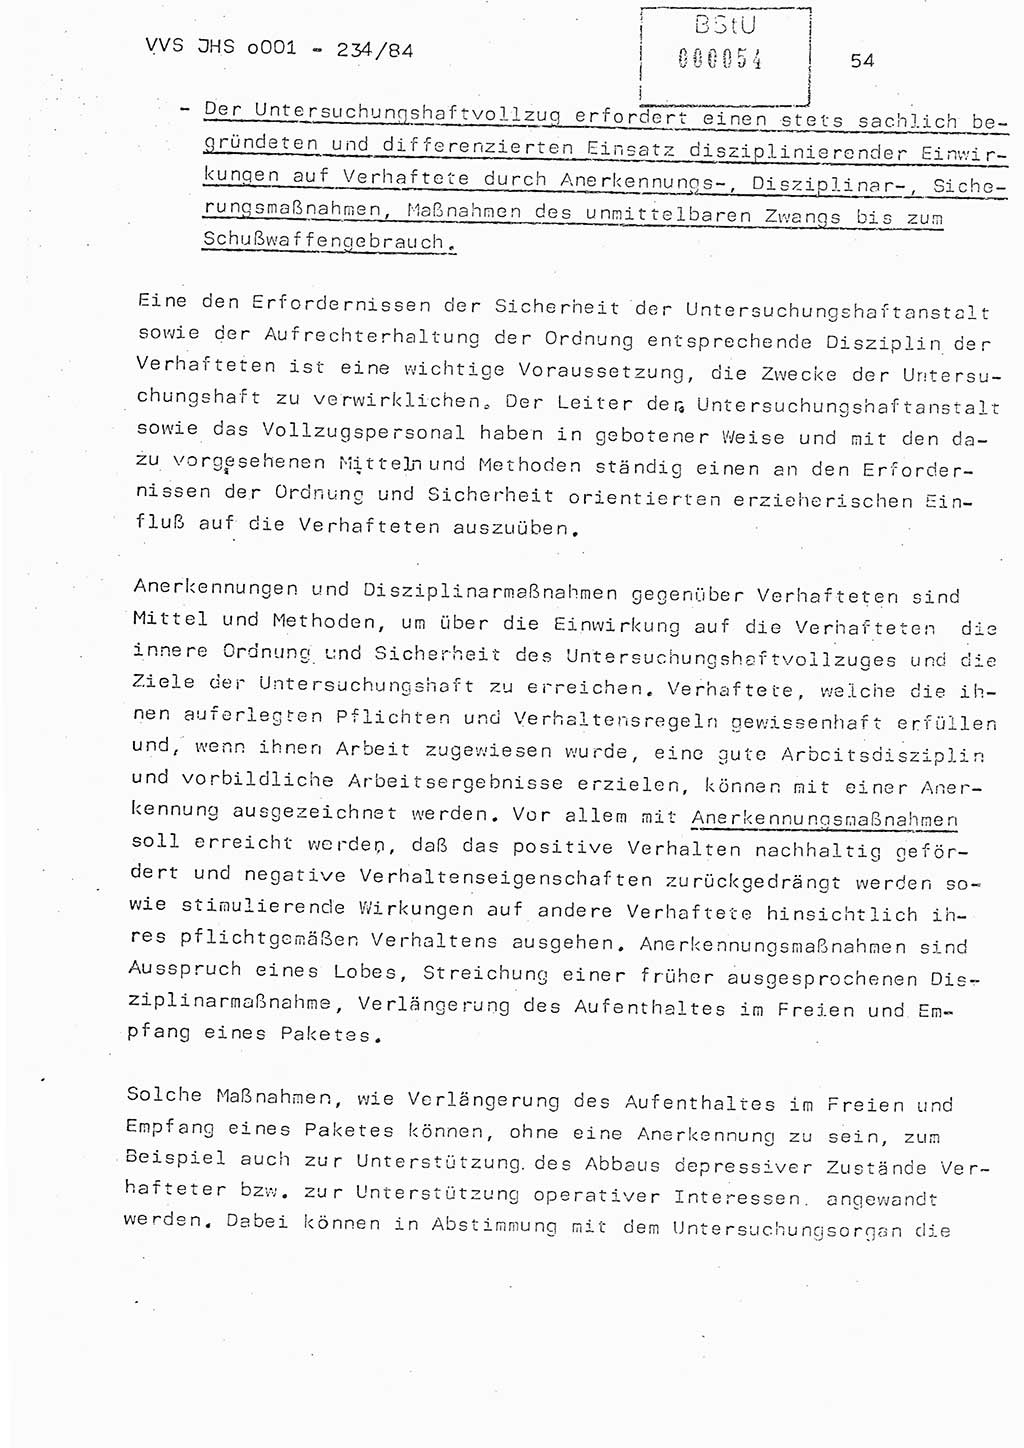 Dissertation Oberst Siegfried Rataizick (Abt. ⅩⅣ), Oberstleutnant Volkmar Heinz (Abt. ⅩⅣ), Oberstleutnant Werner Stein (HA Ⅸ), Hauptmann Heinz Conrad (JHS), Ministerium für Staatssicherheit (MfS) [Deutsche Demokratische Republik (DDR)], Juristische Hochschule (JHS), Vertrauliche Verschlußsache (VVS) o001-234/84, Potsdam 1984, Seite 54 (Diss. MfS DDR JHS VVS o001-234/84 1984, S. 54)